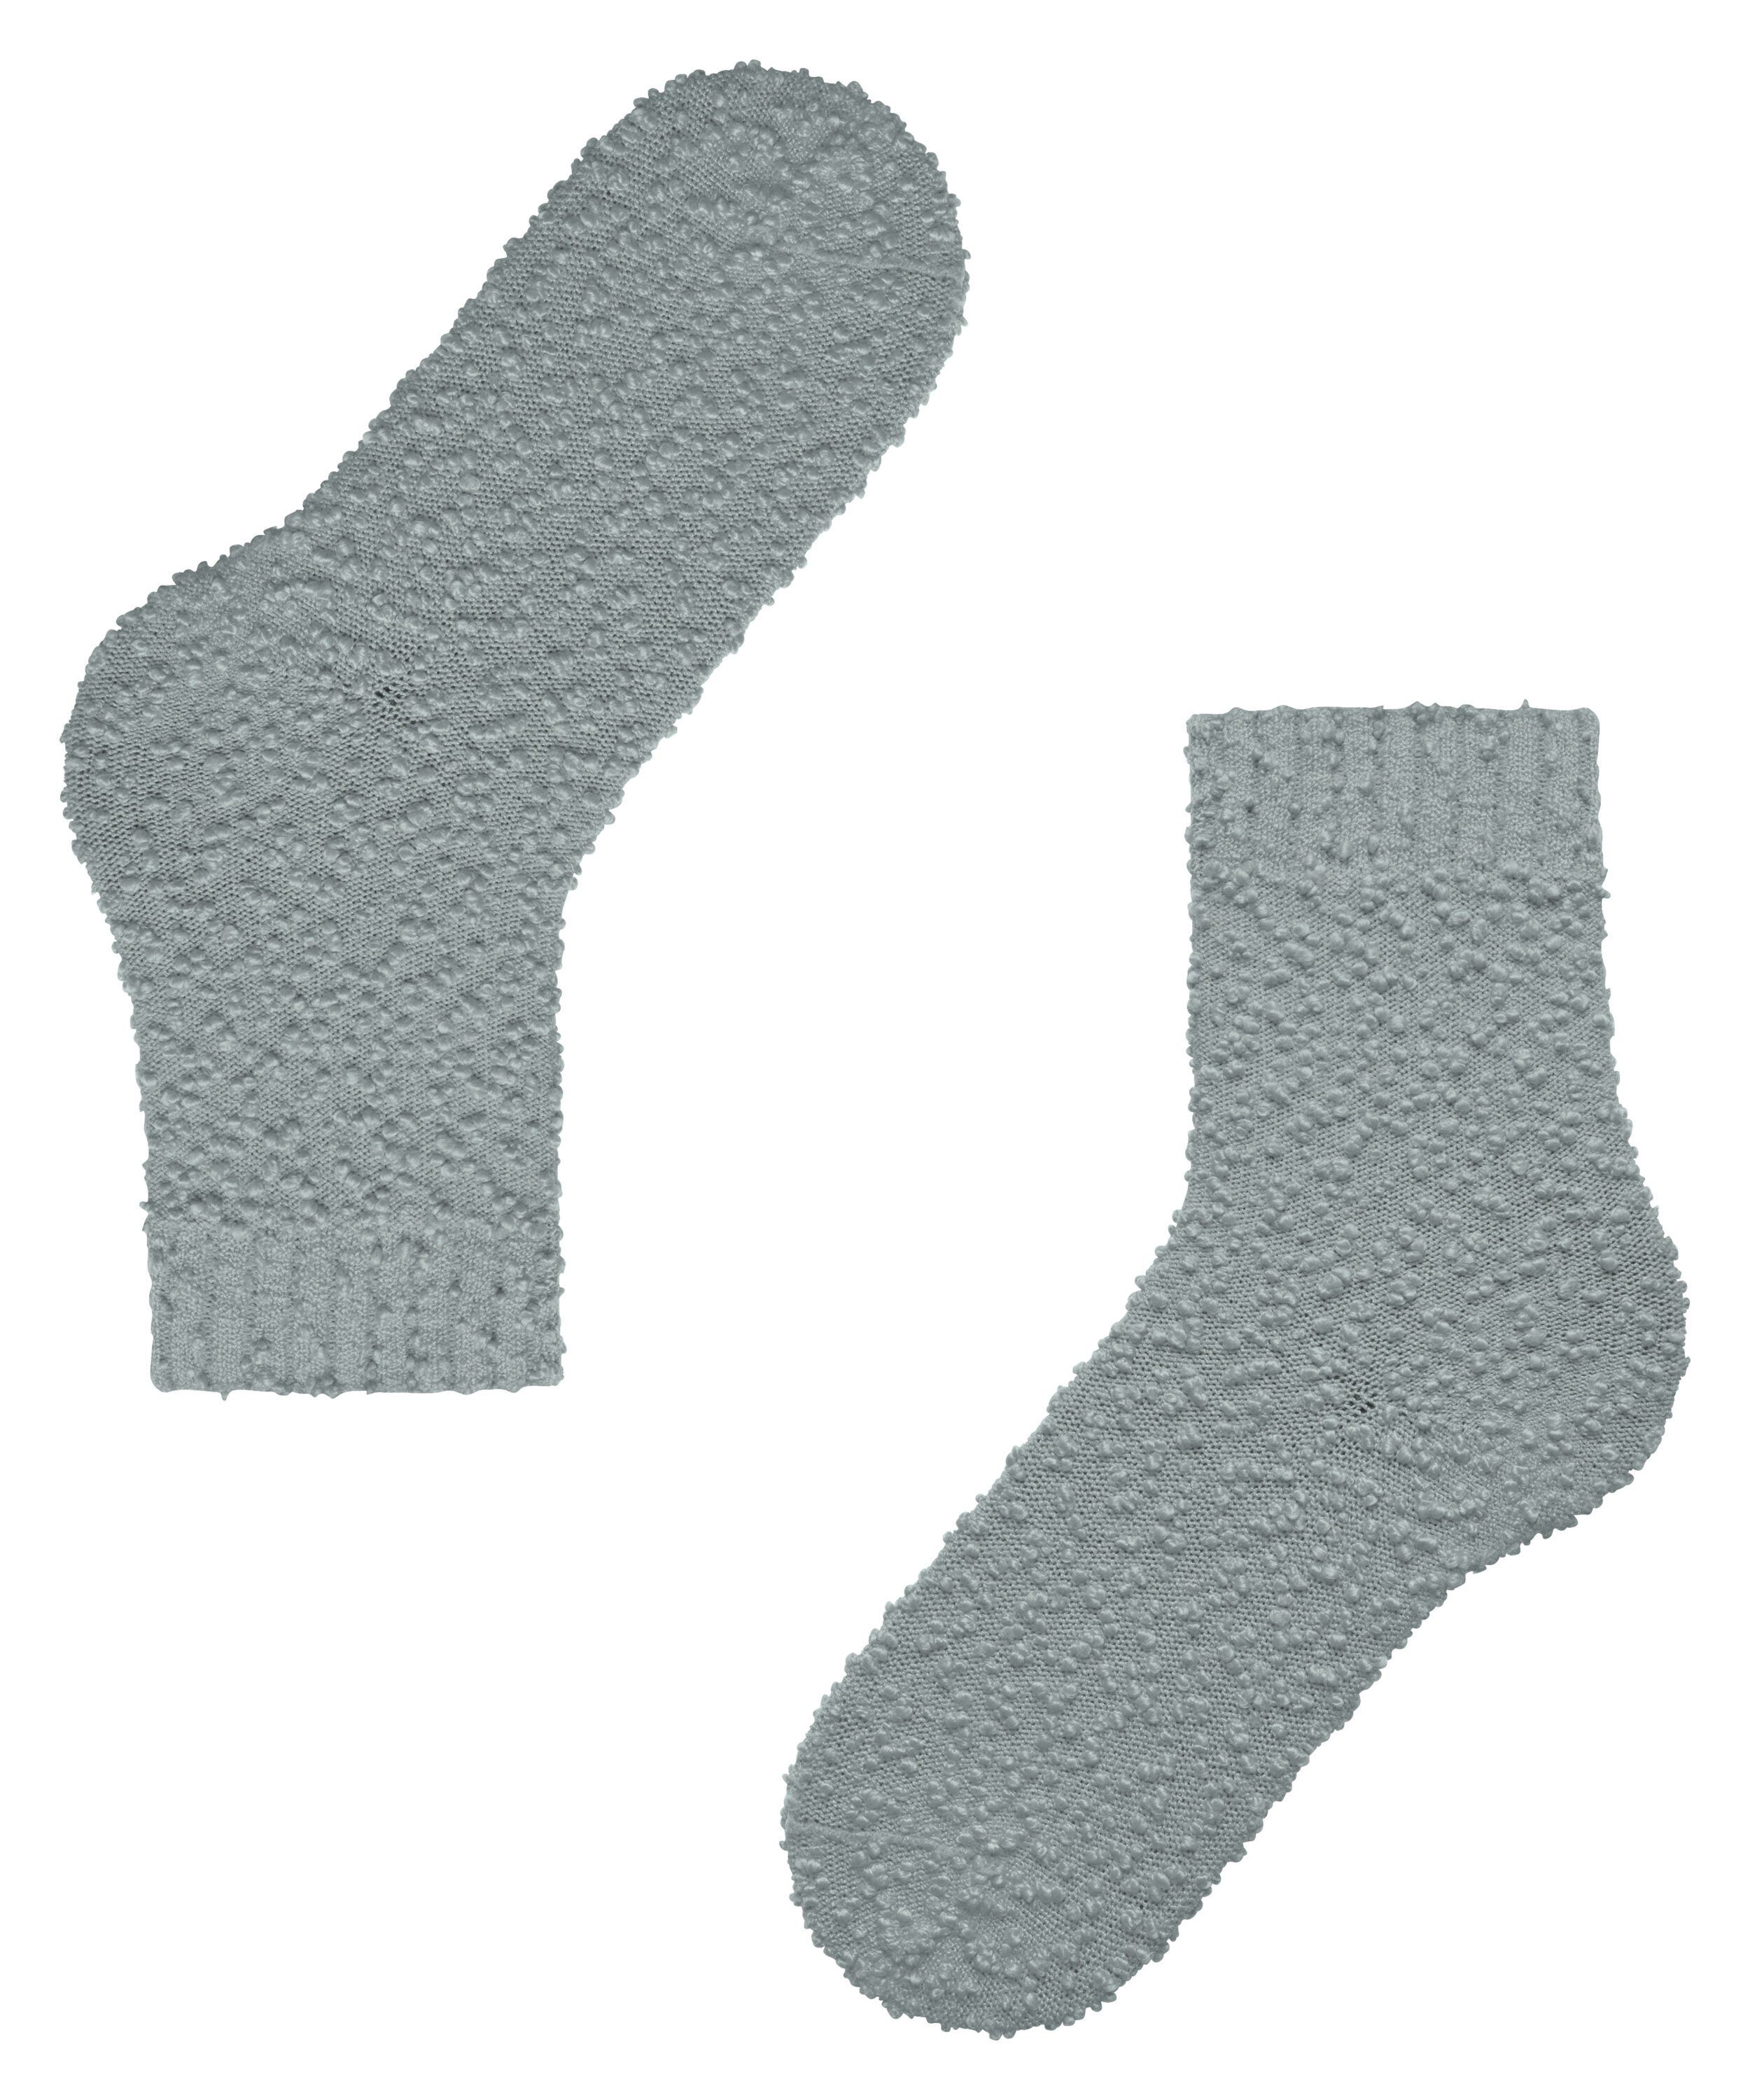 stonegrey Seashell (3295) (1-Paar) Socken FALKE